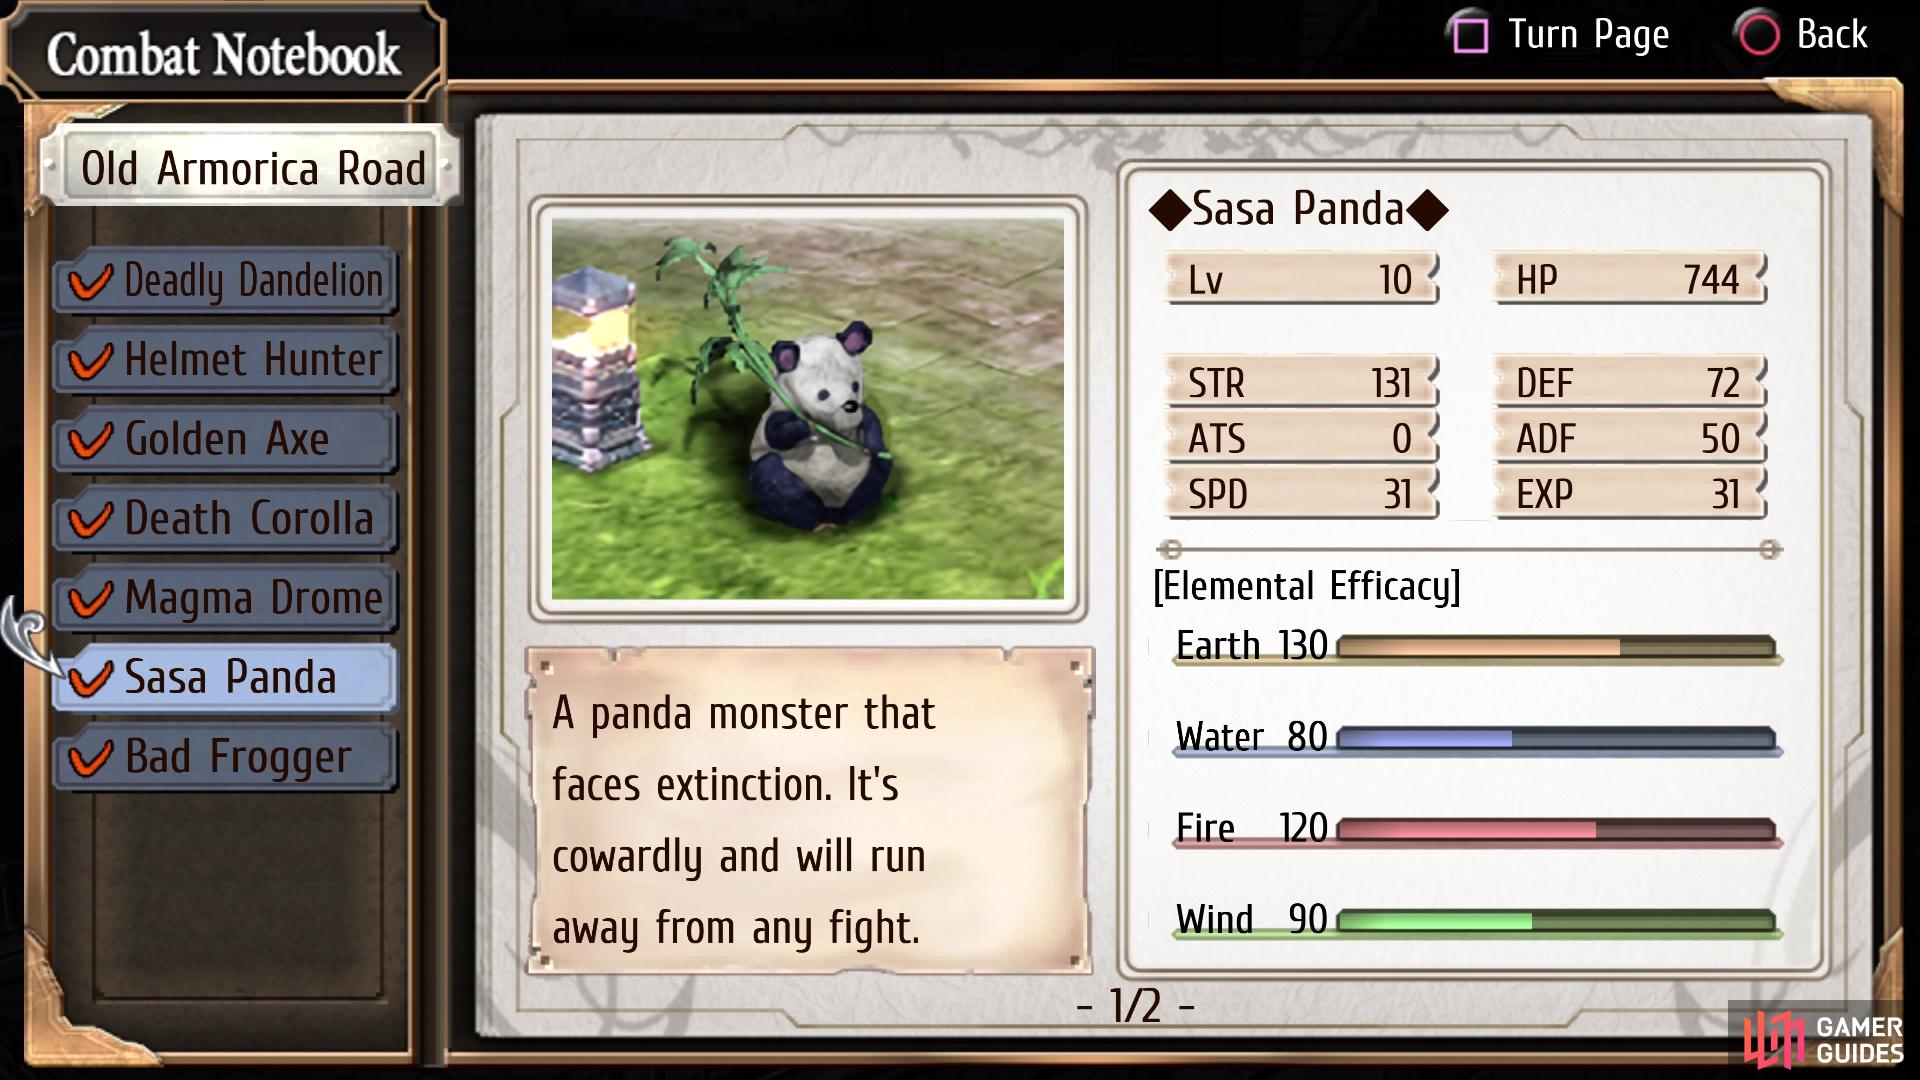 The Sasa Panda enemy